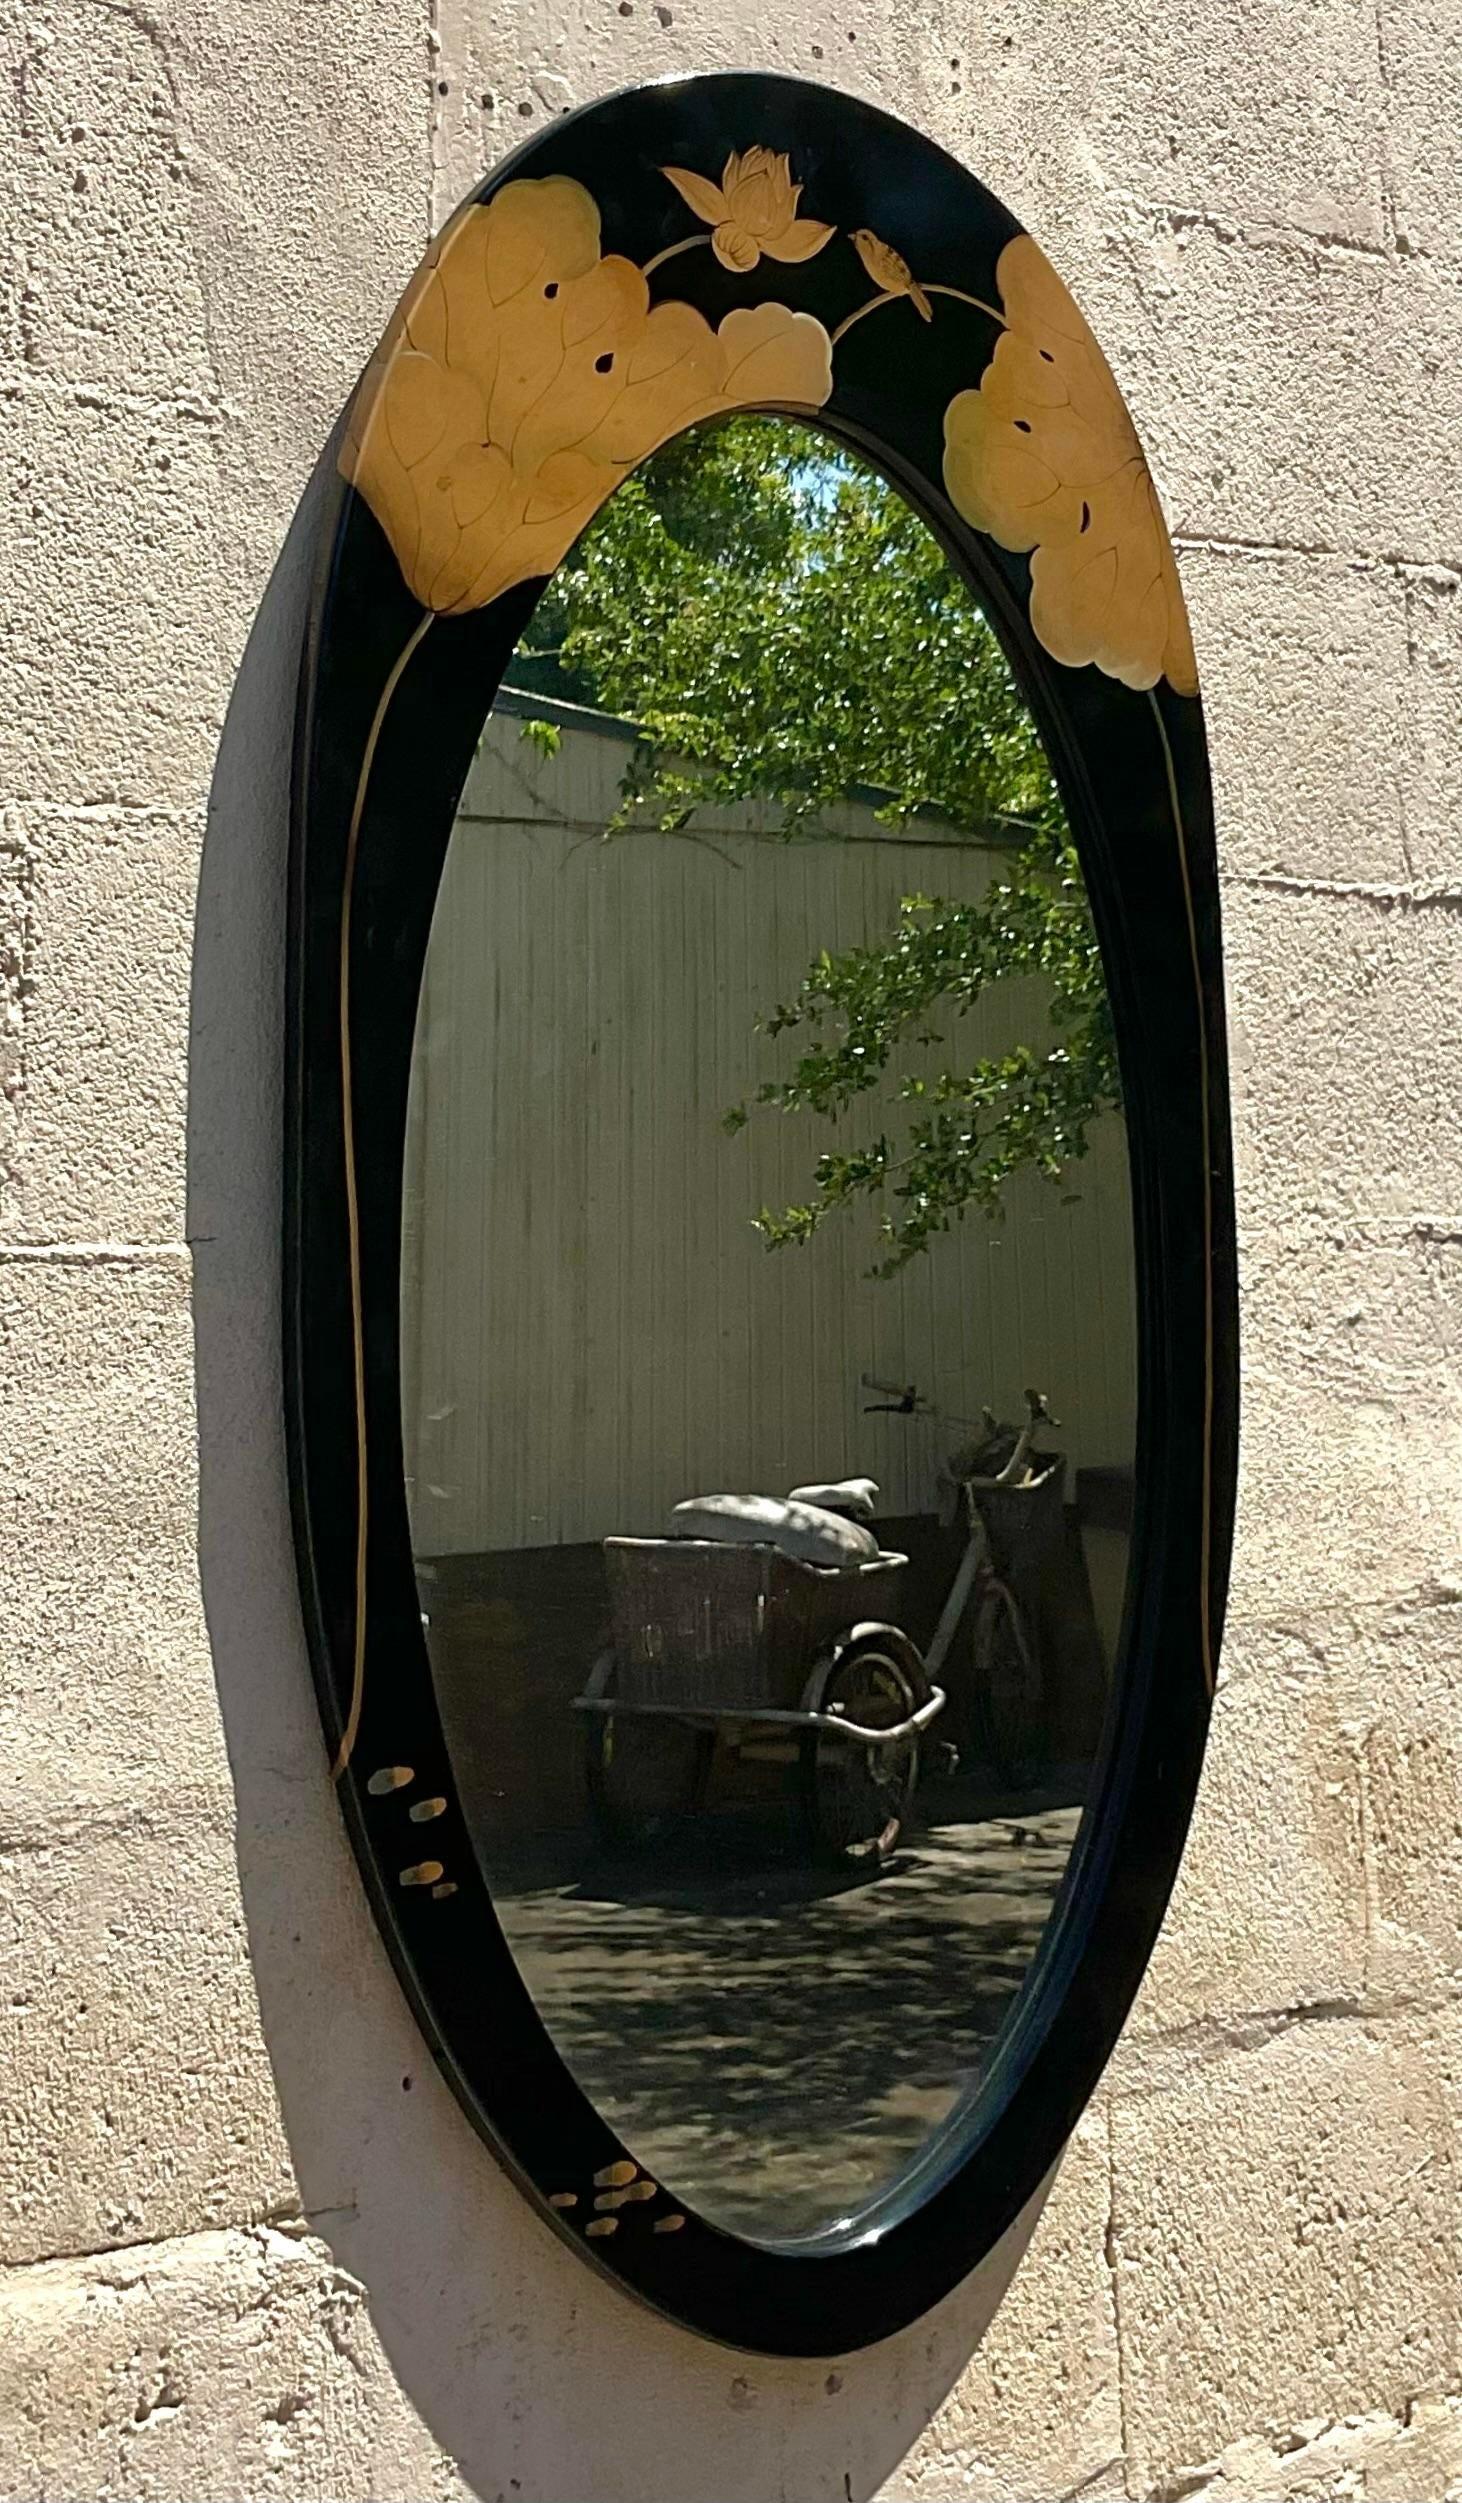 Ajoutez une touche bohème à votre espace avec notre miroir laqué Vintage By By Lotus Blossom. Eleg de l'artisanat américain, ce miroir présente un délicat design de fleur de lotus, apportant un mélange de charme vintage et d'élégance artistique à